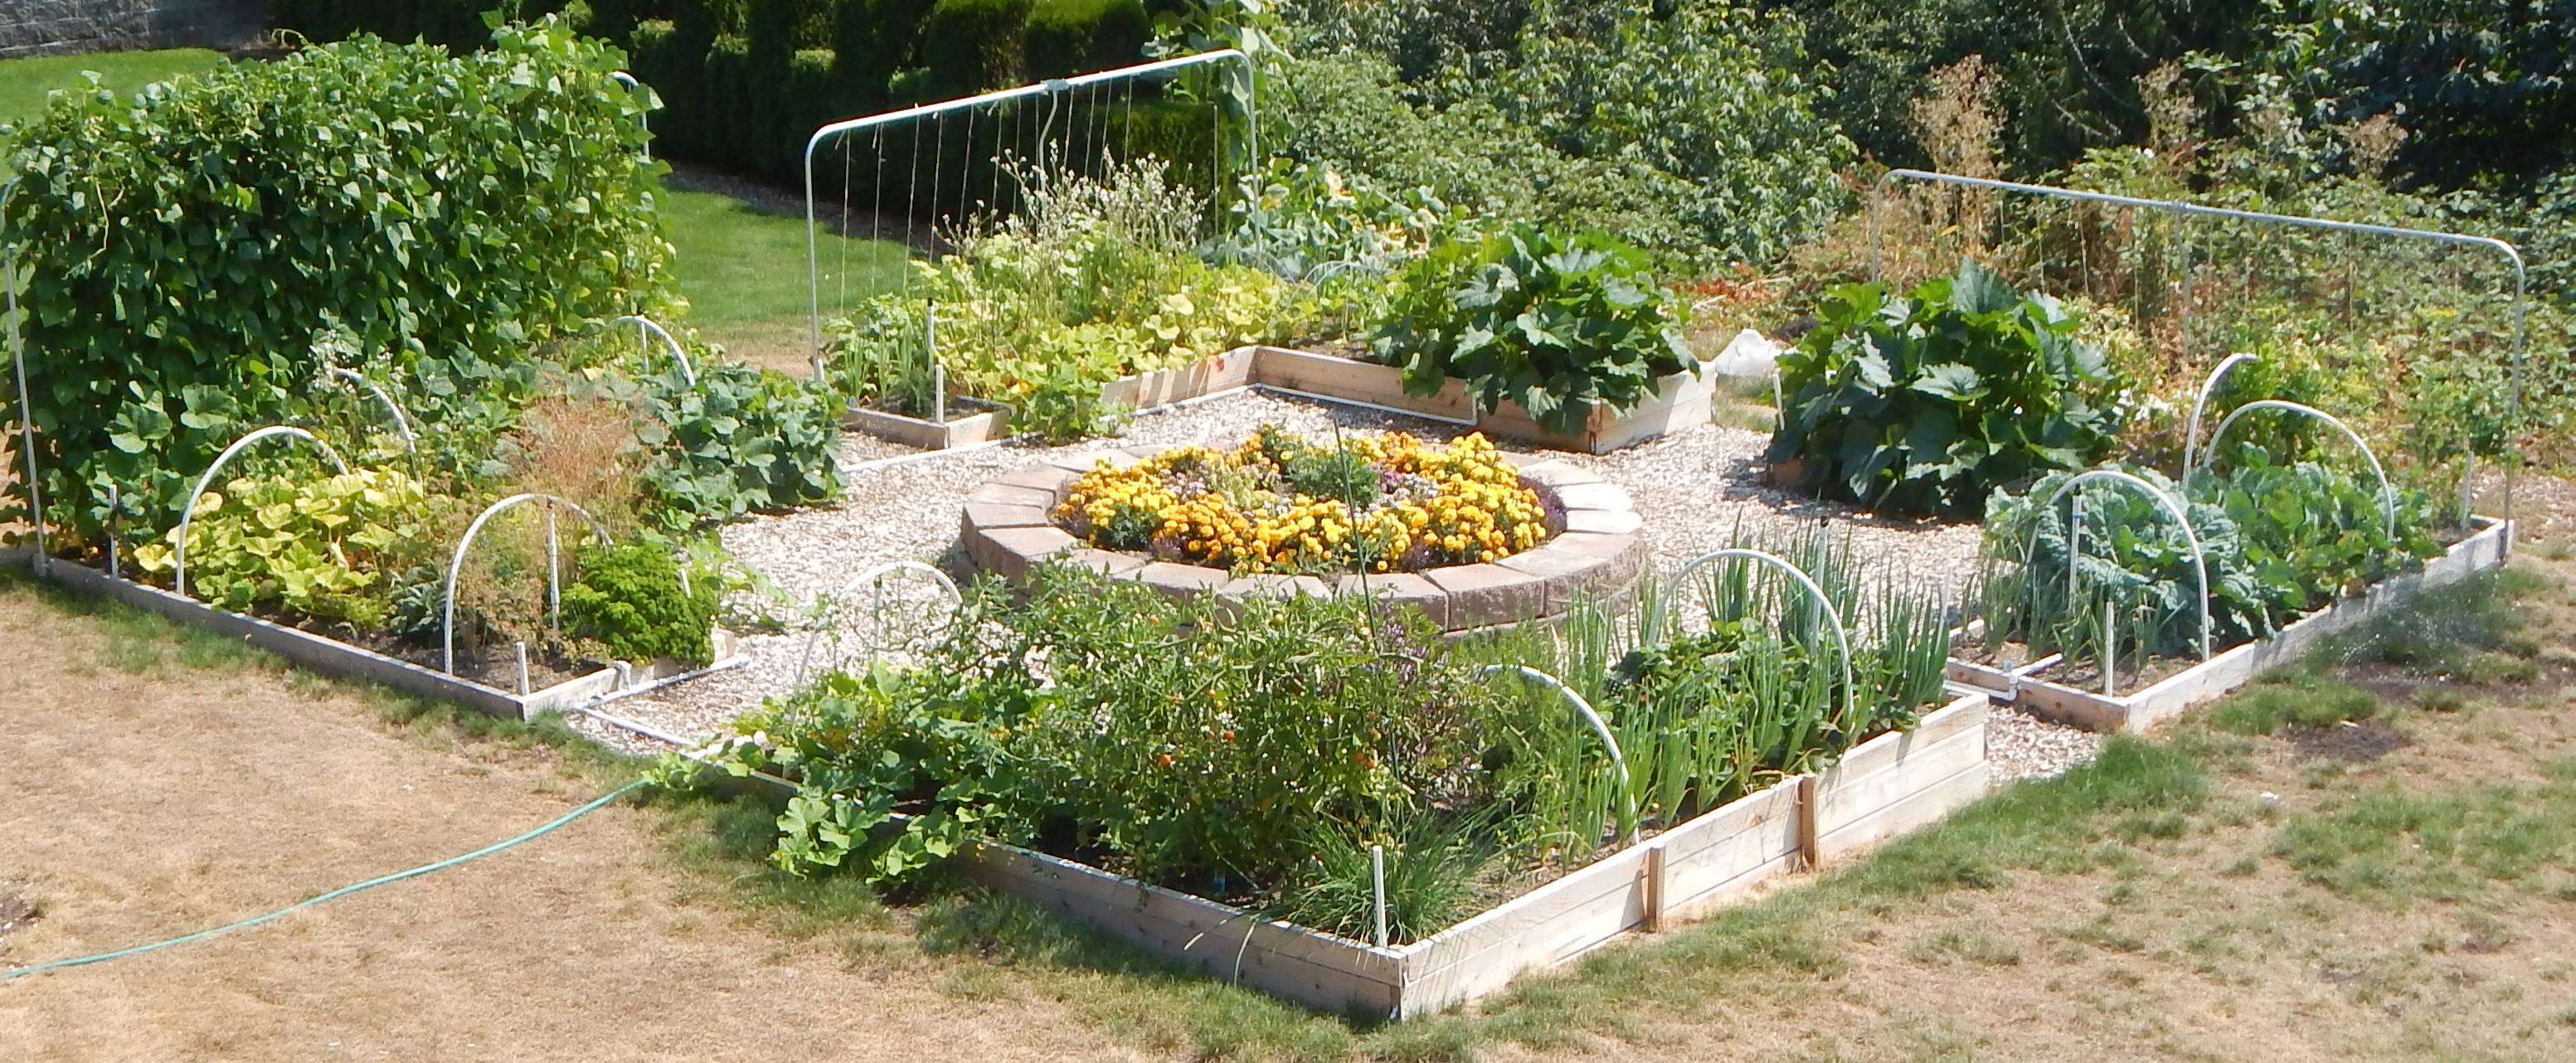 Urban Gardening Ideas